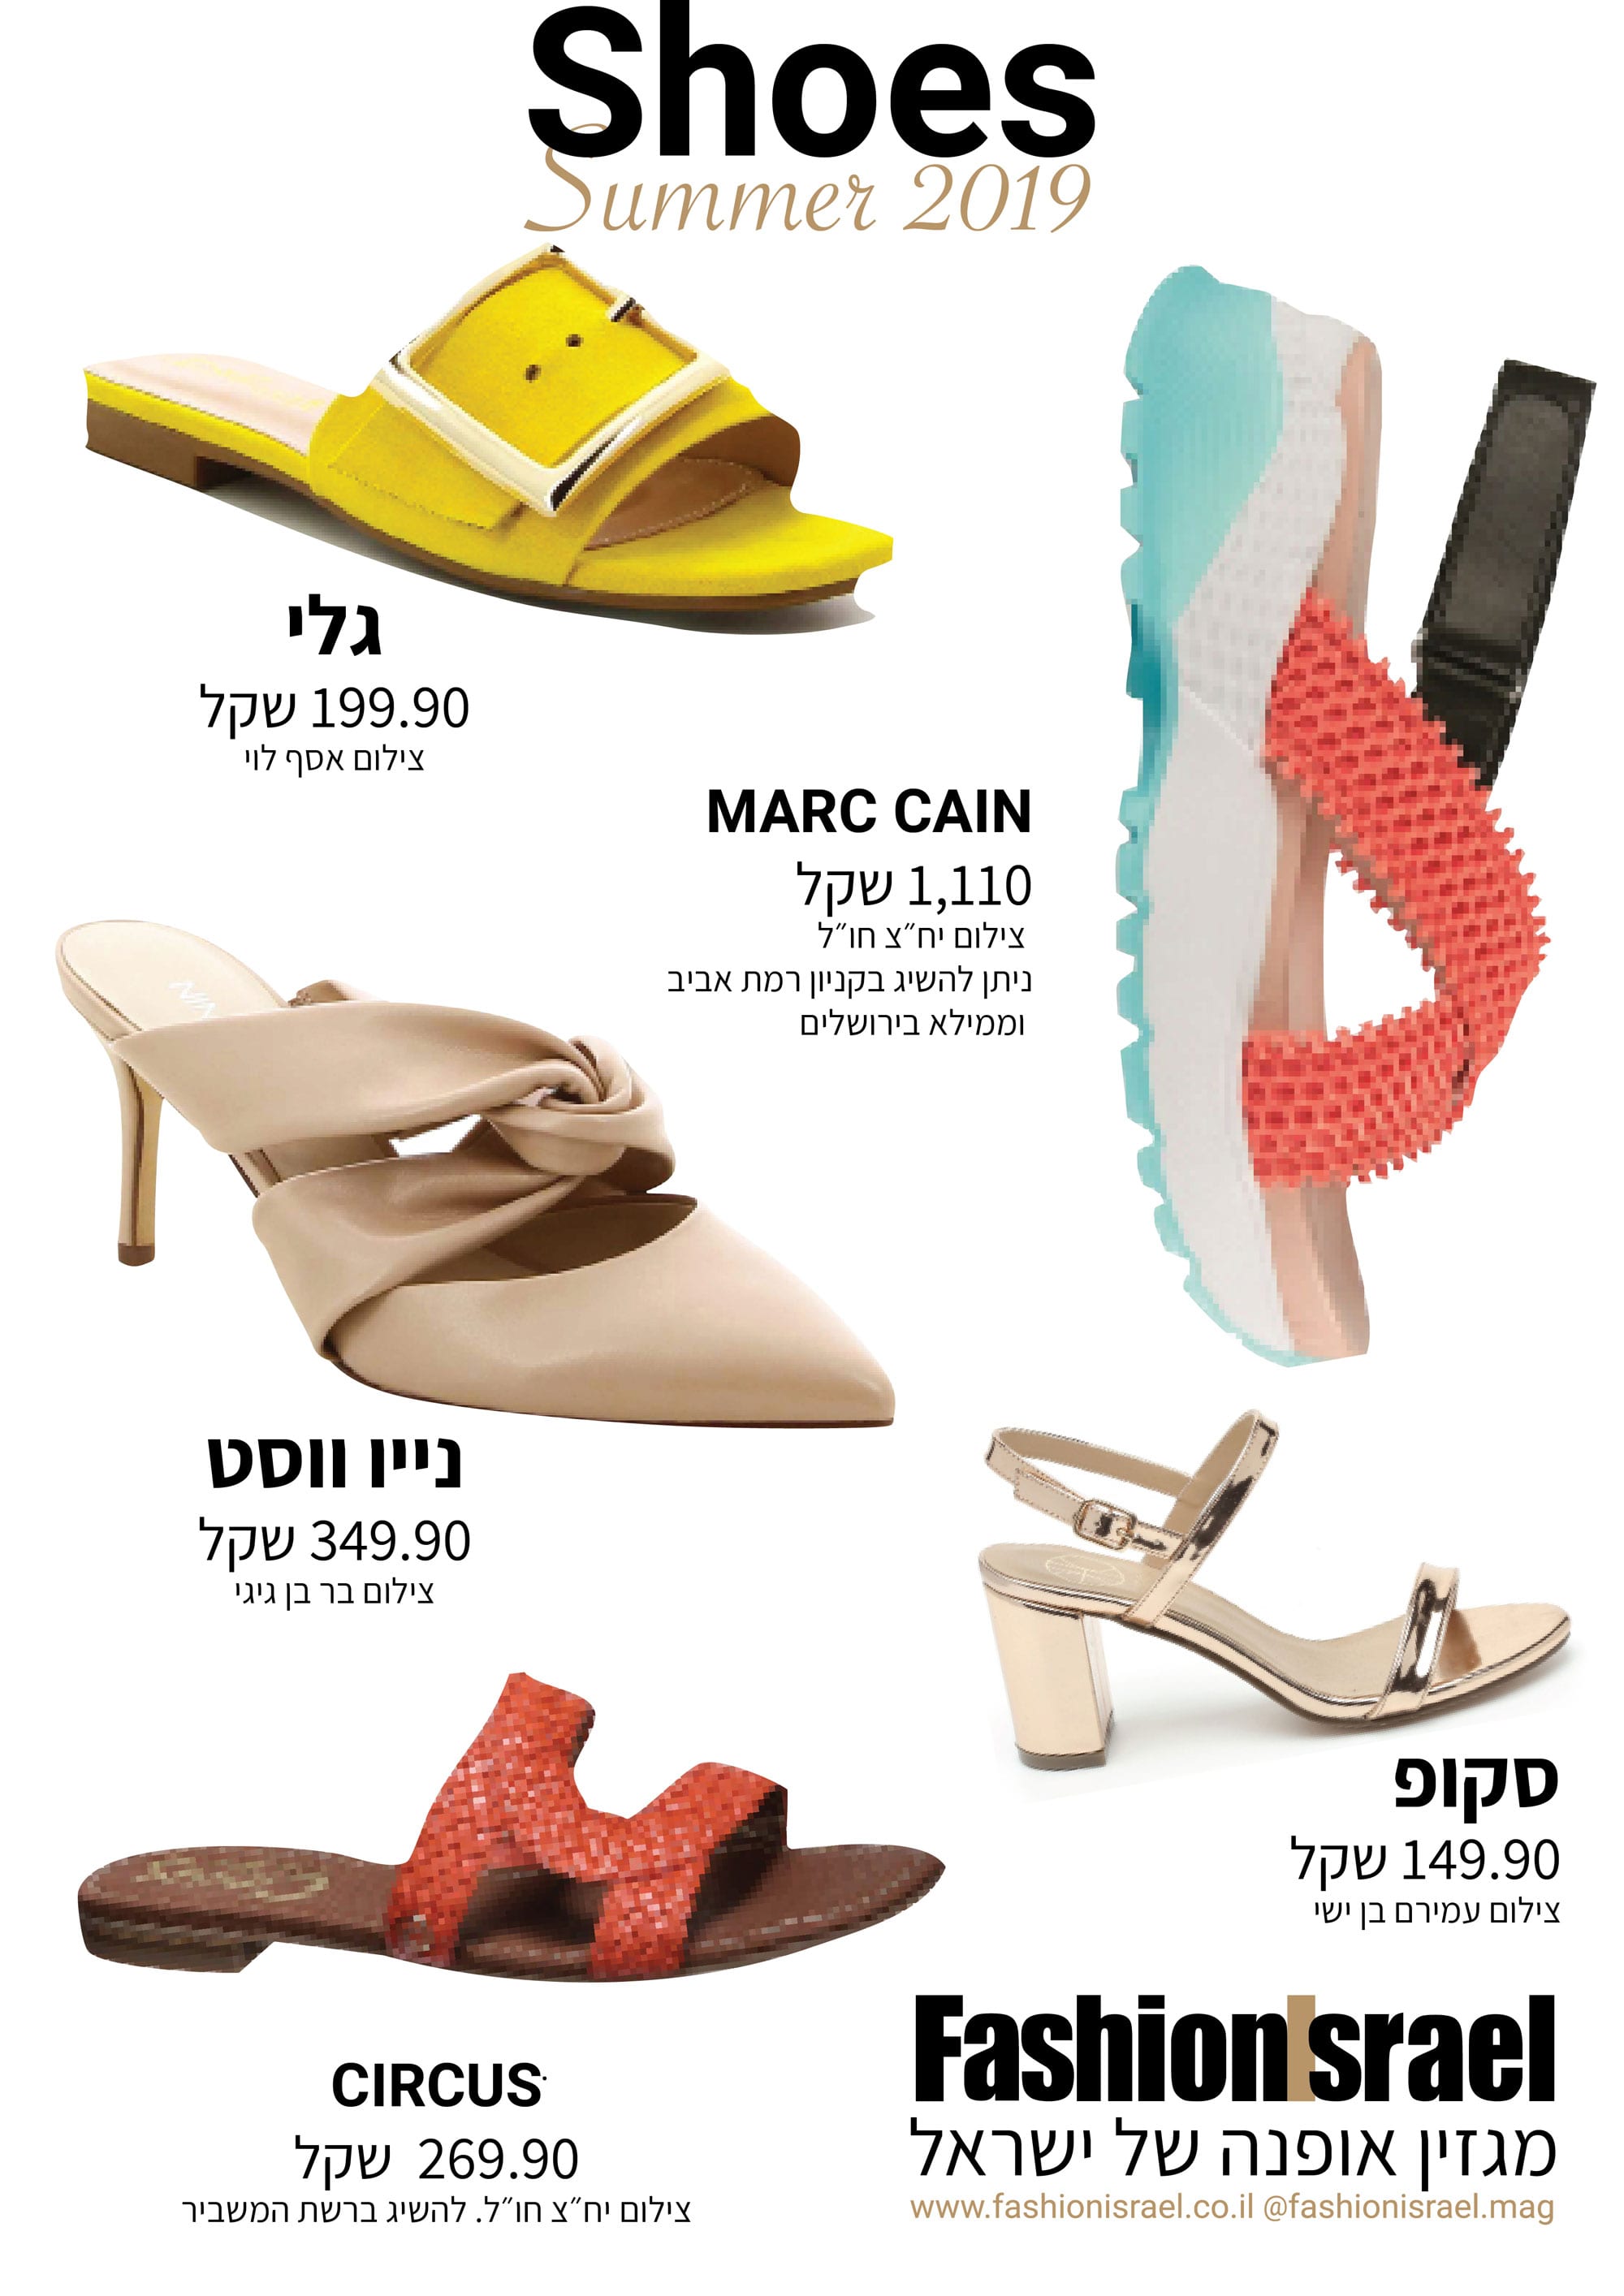 נעליים קיץ 2019, מגזין אופנה - 1 Fashion Israel - מגזין אופנה של ישראל